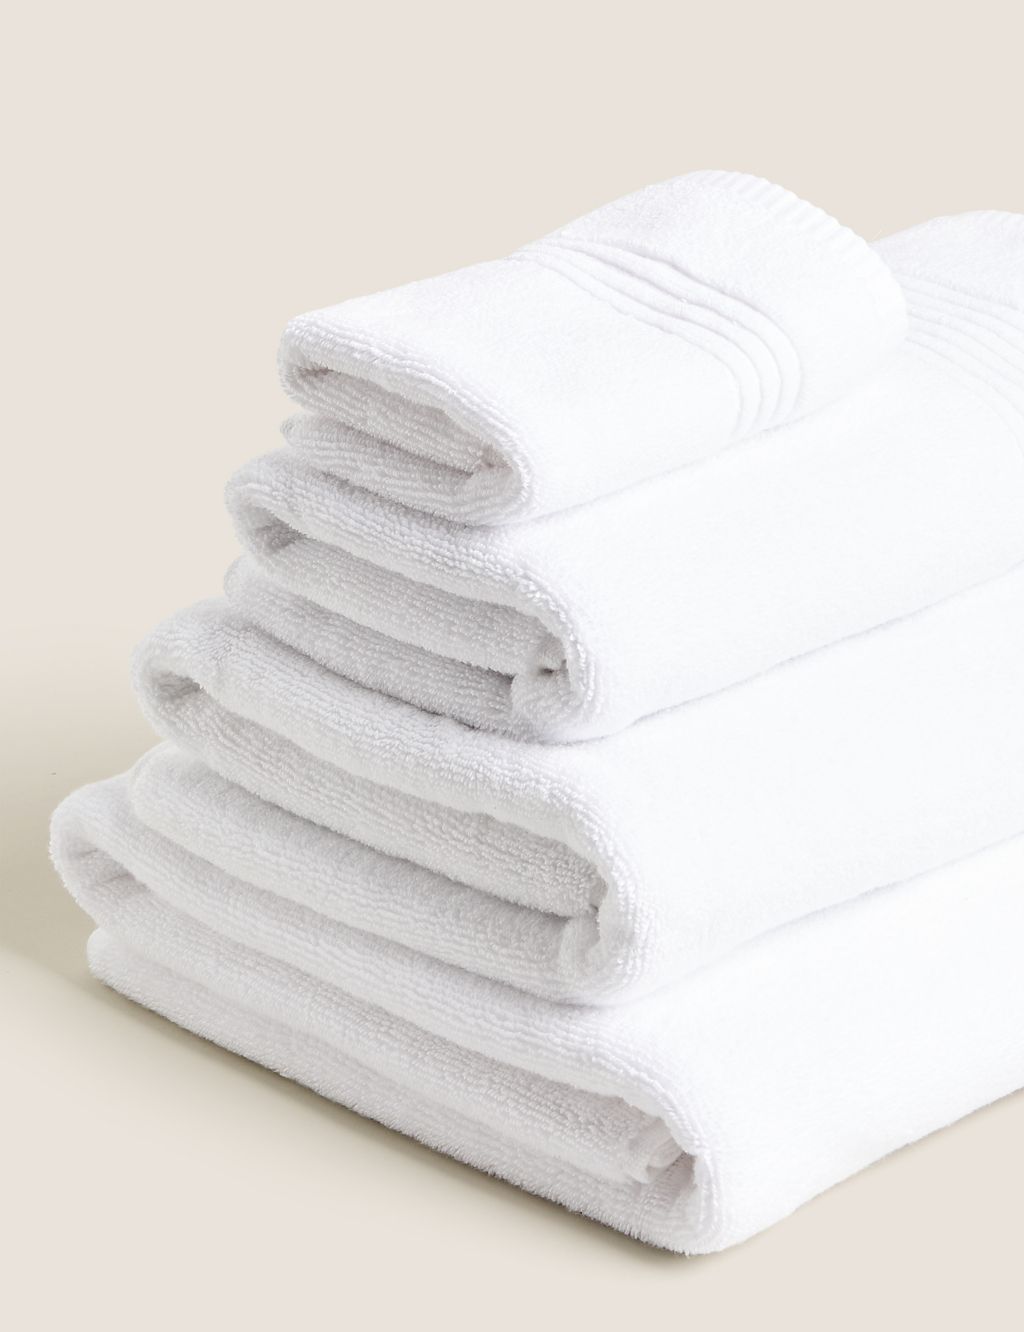 Egyptian Cotton Luxury Heavyweight Towel 2 of 6